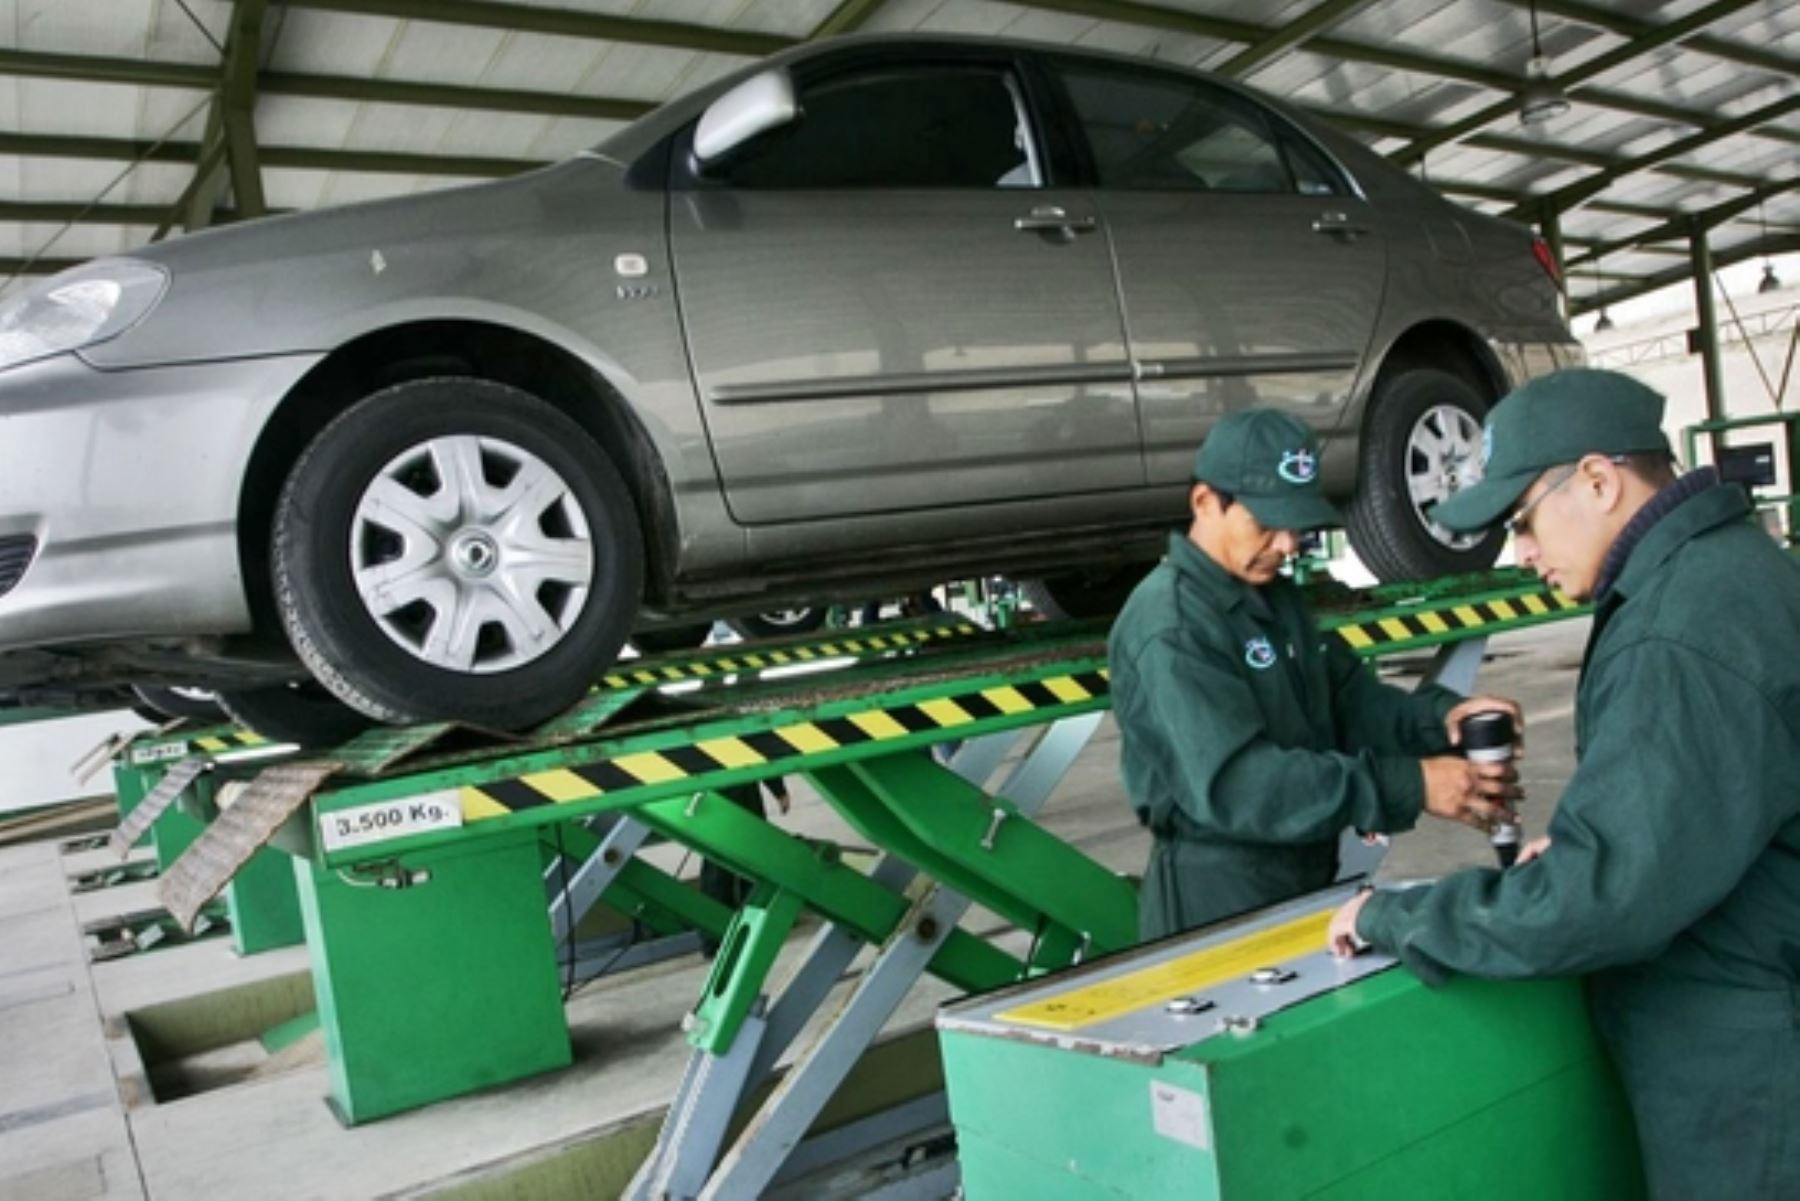 Centro de inspección técnica vehicular. Foto: ANDINA/Difusión.